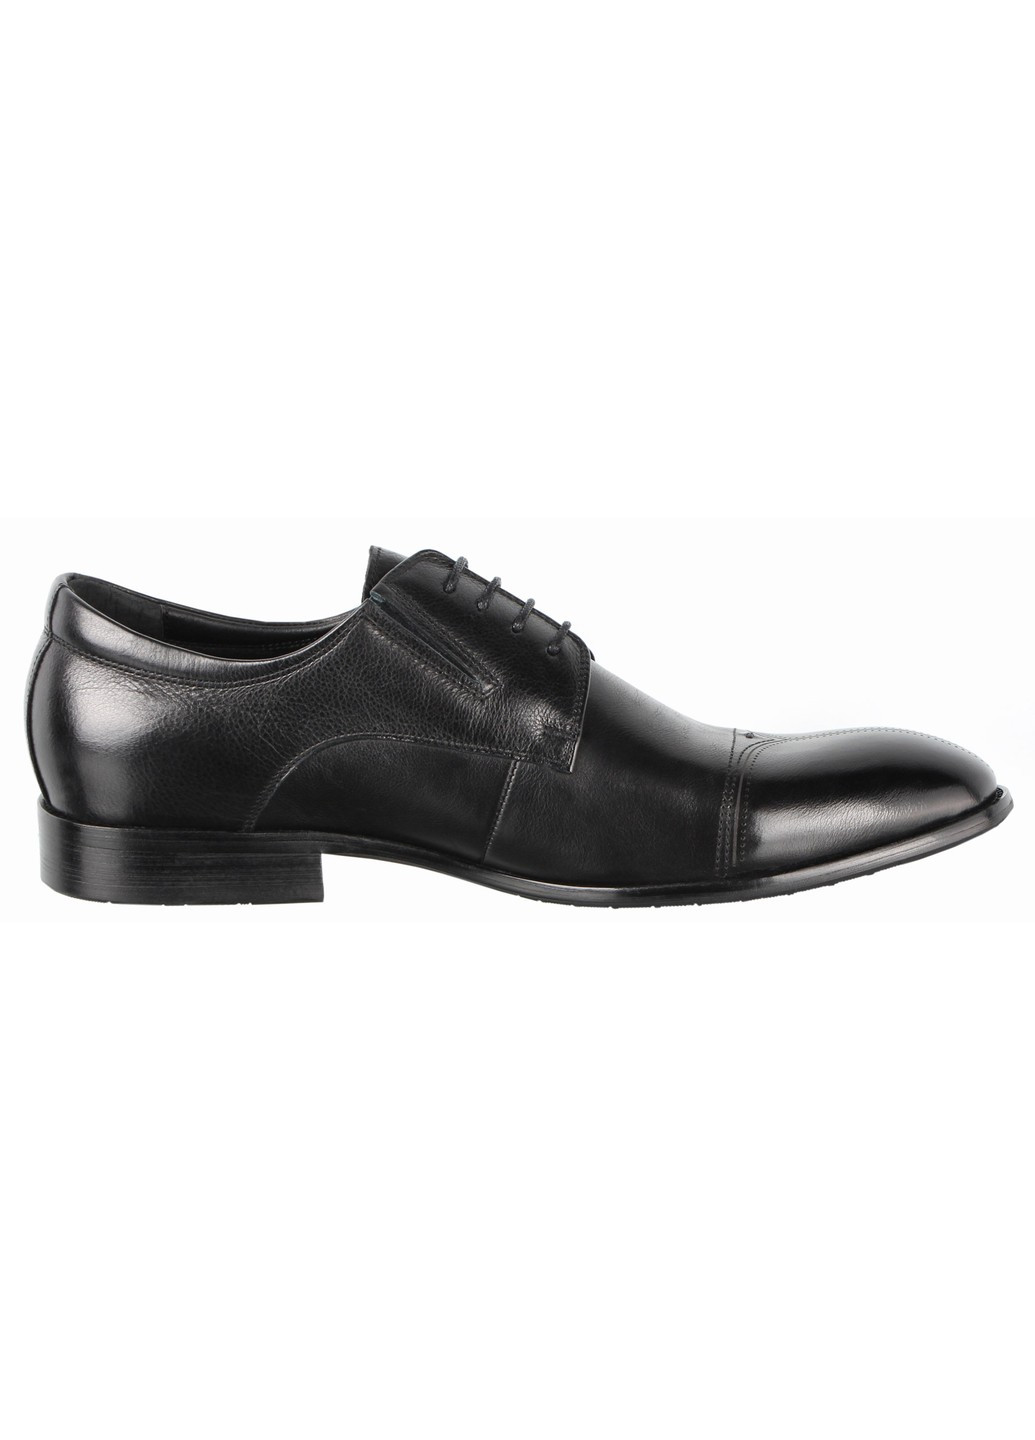 Черные мужские классические туфли 197403 Cosottinni на шнурках